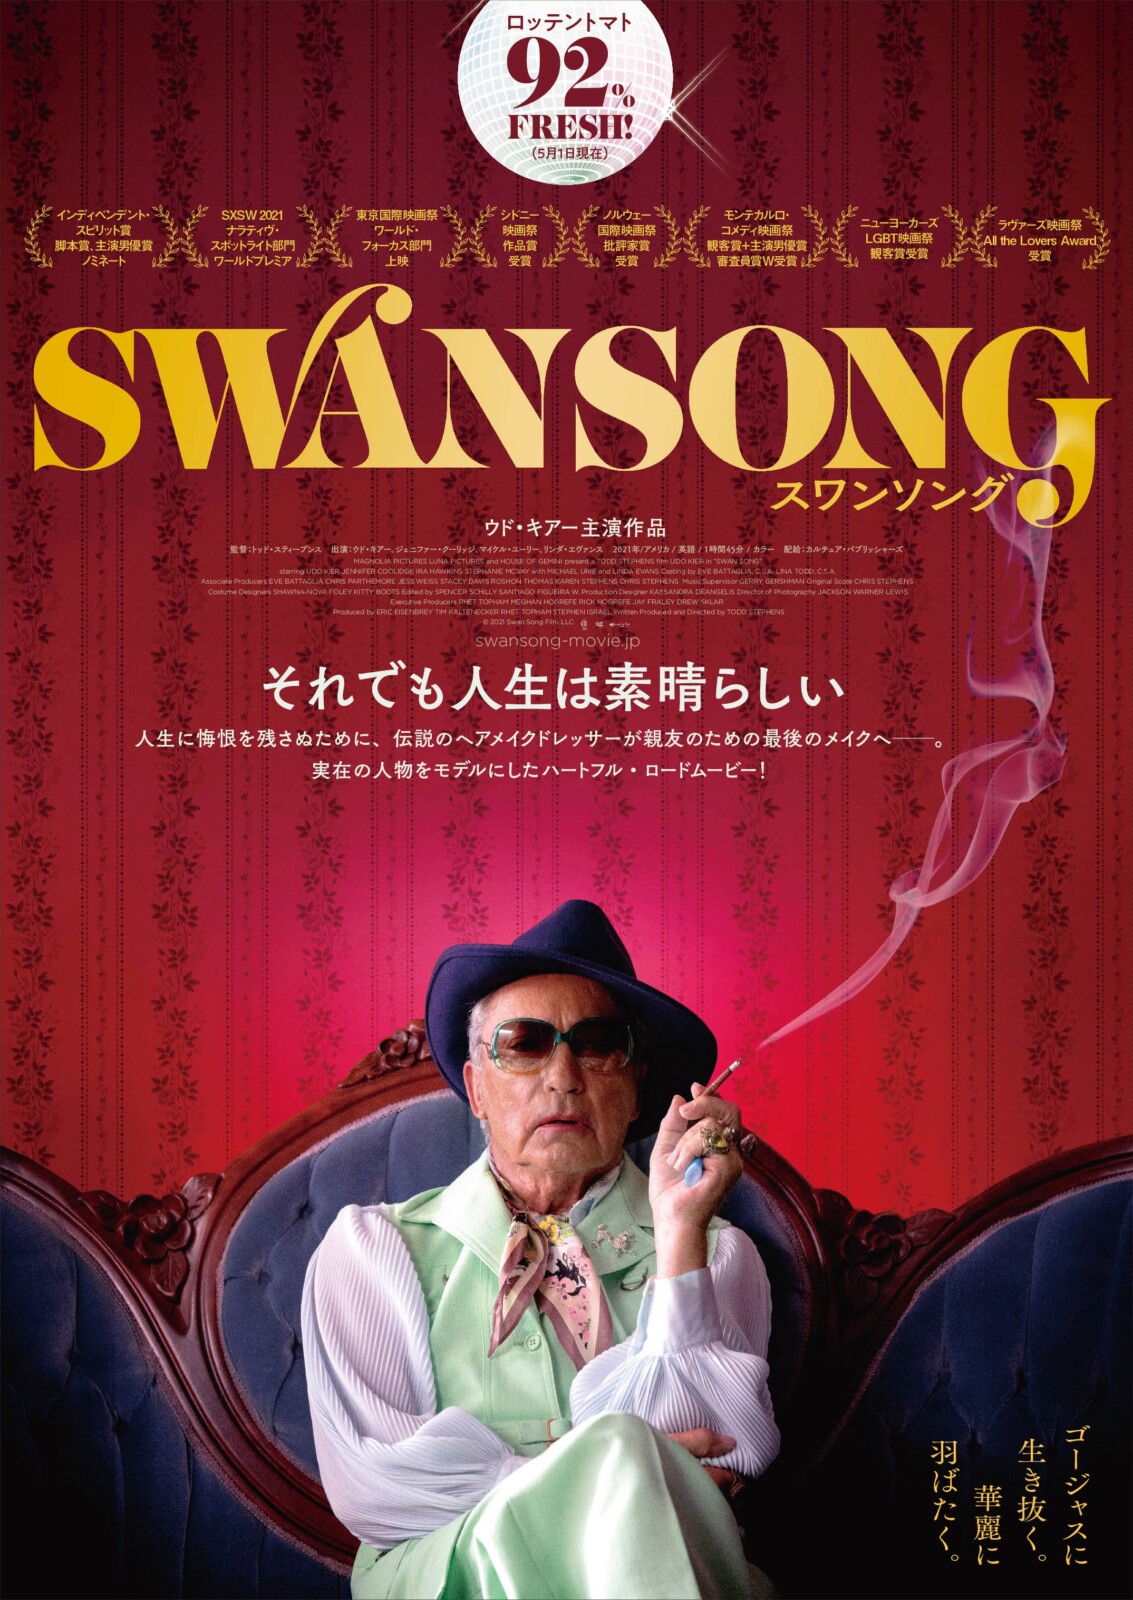 ウド・キアー主演『スワンソング』8月26日公開決定！日本版ポスターが解禁！ | Fan's Voice | ファンズボイス